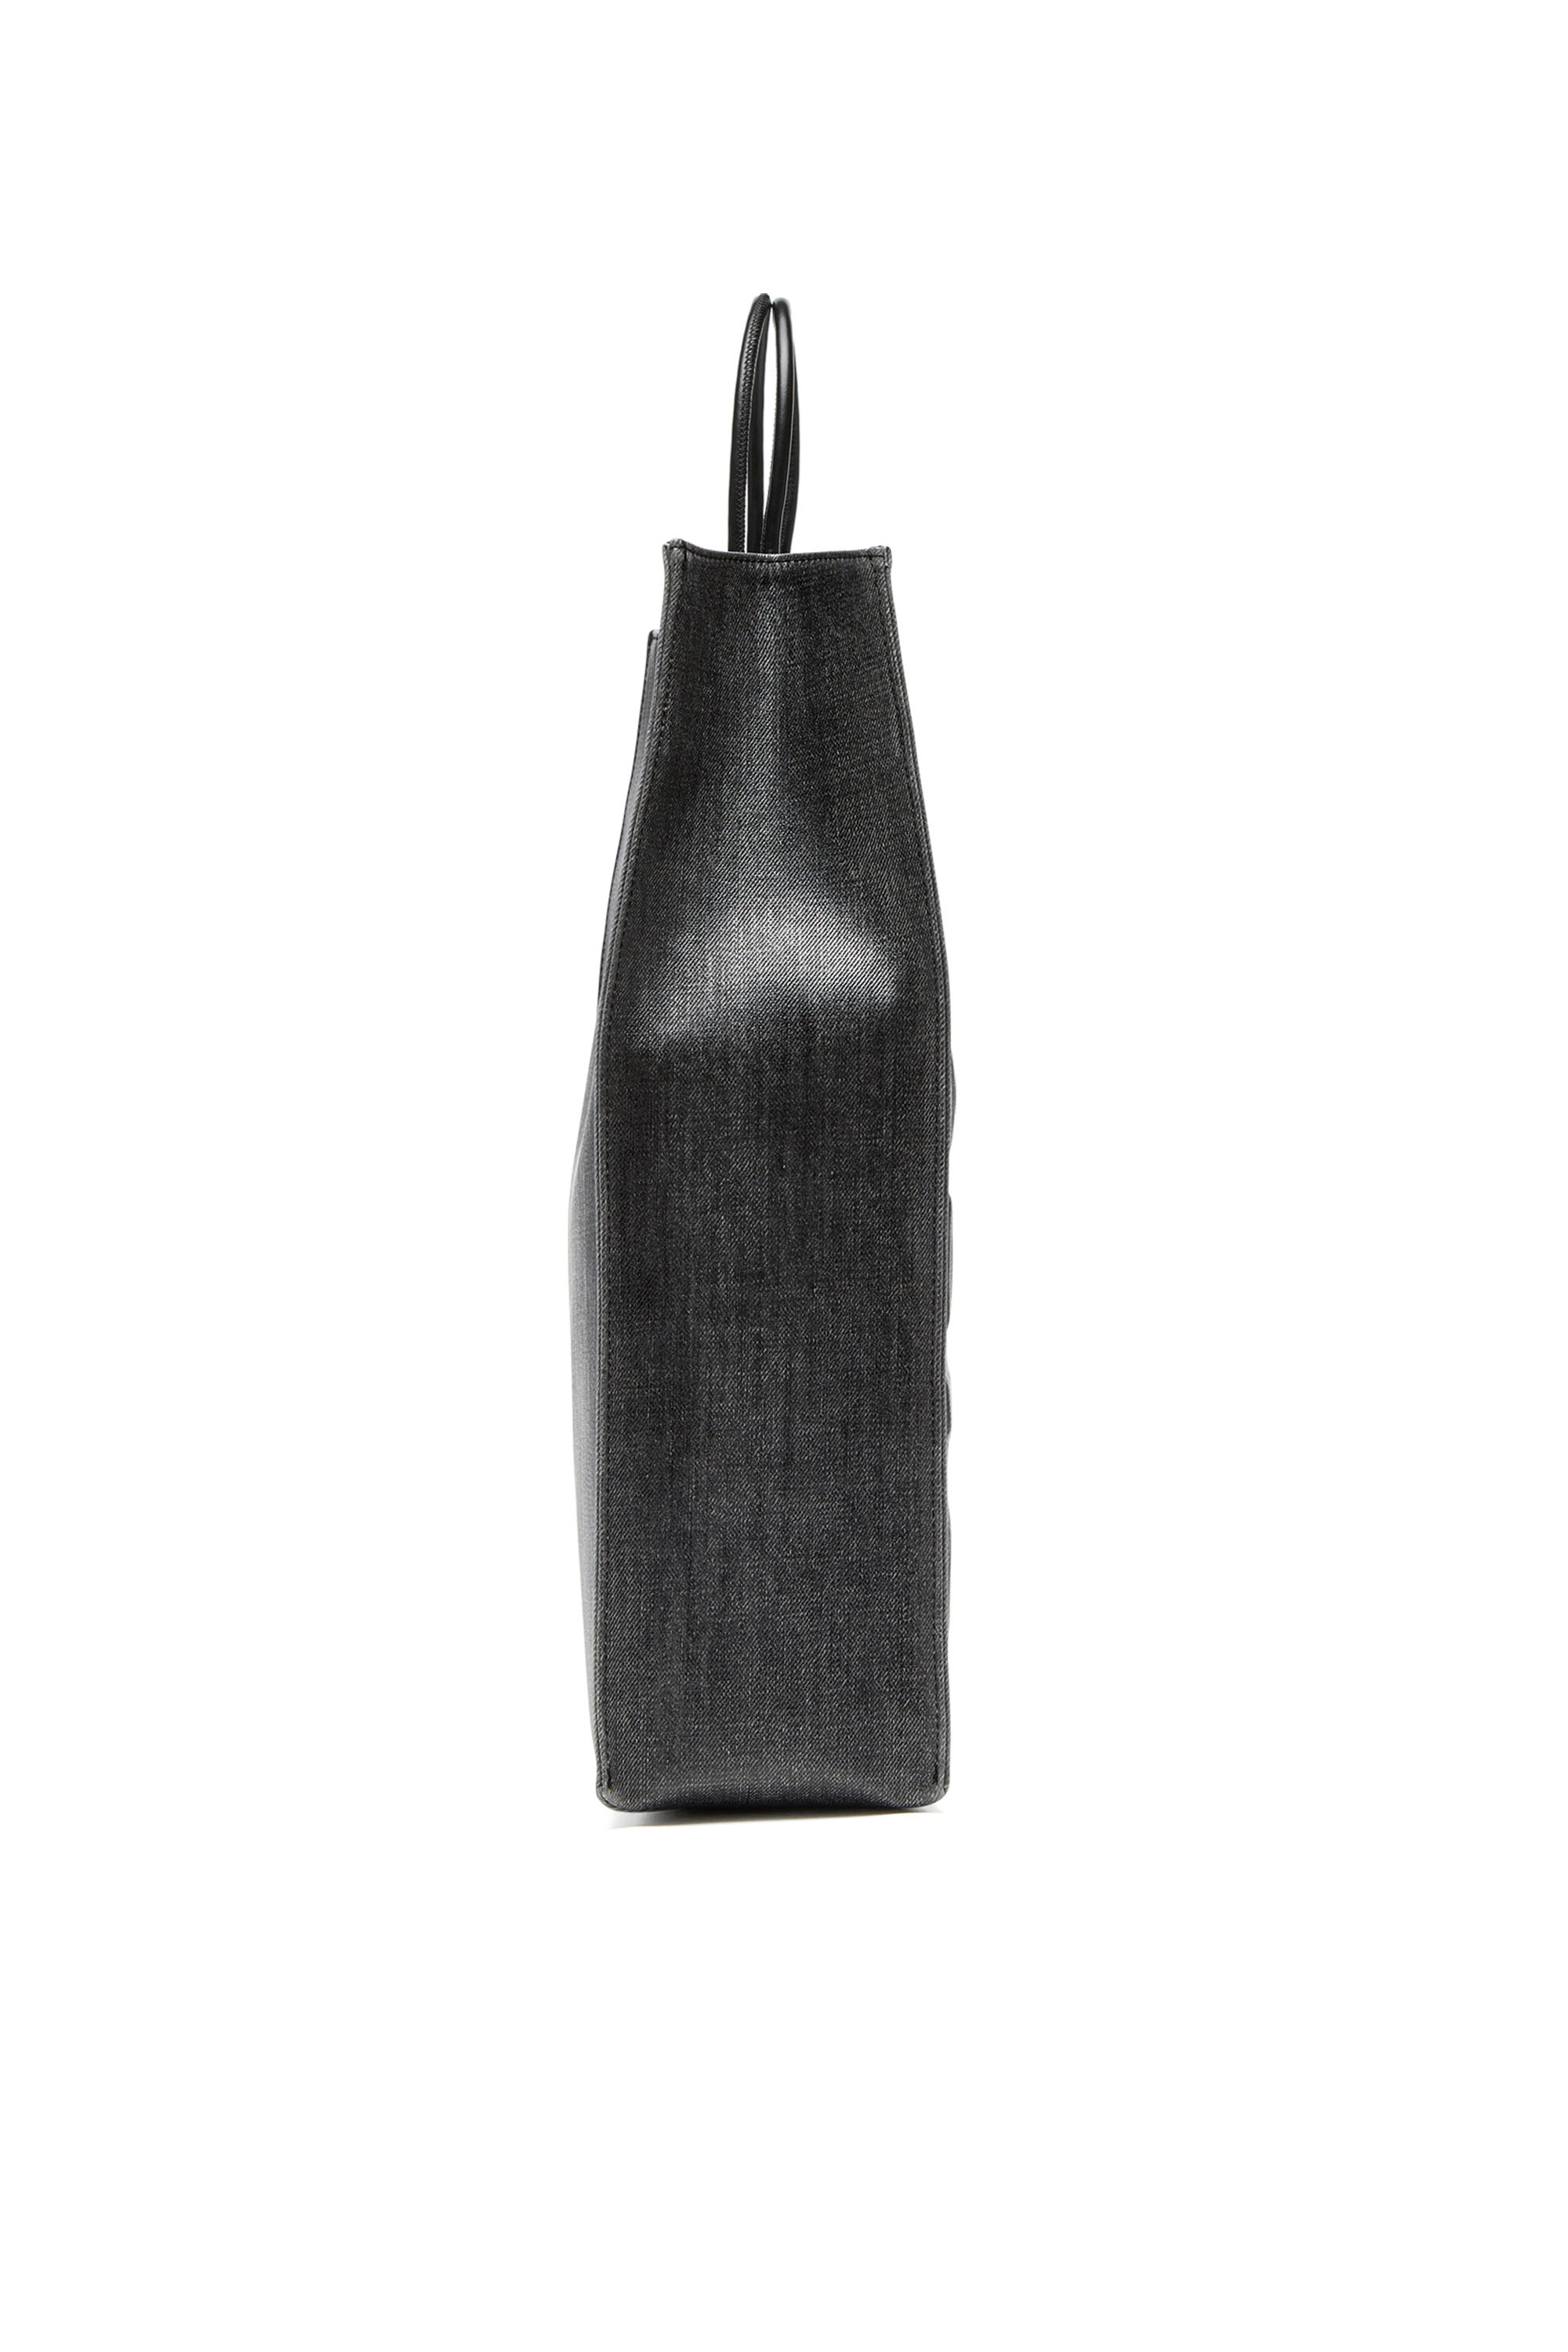 Diesel - DSL 3D SHOPPER L X, Man Dsl 3D L-Large tote bag in coated solarised denim in Black - Image 3